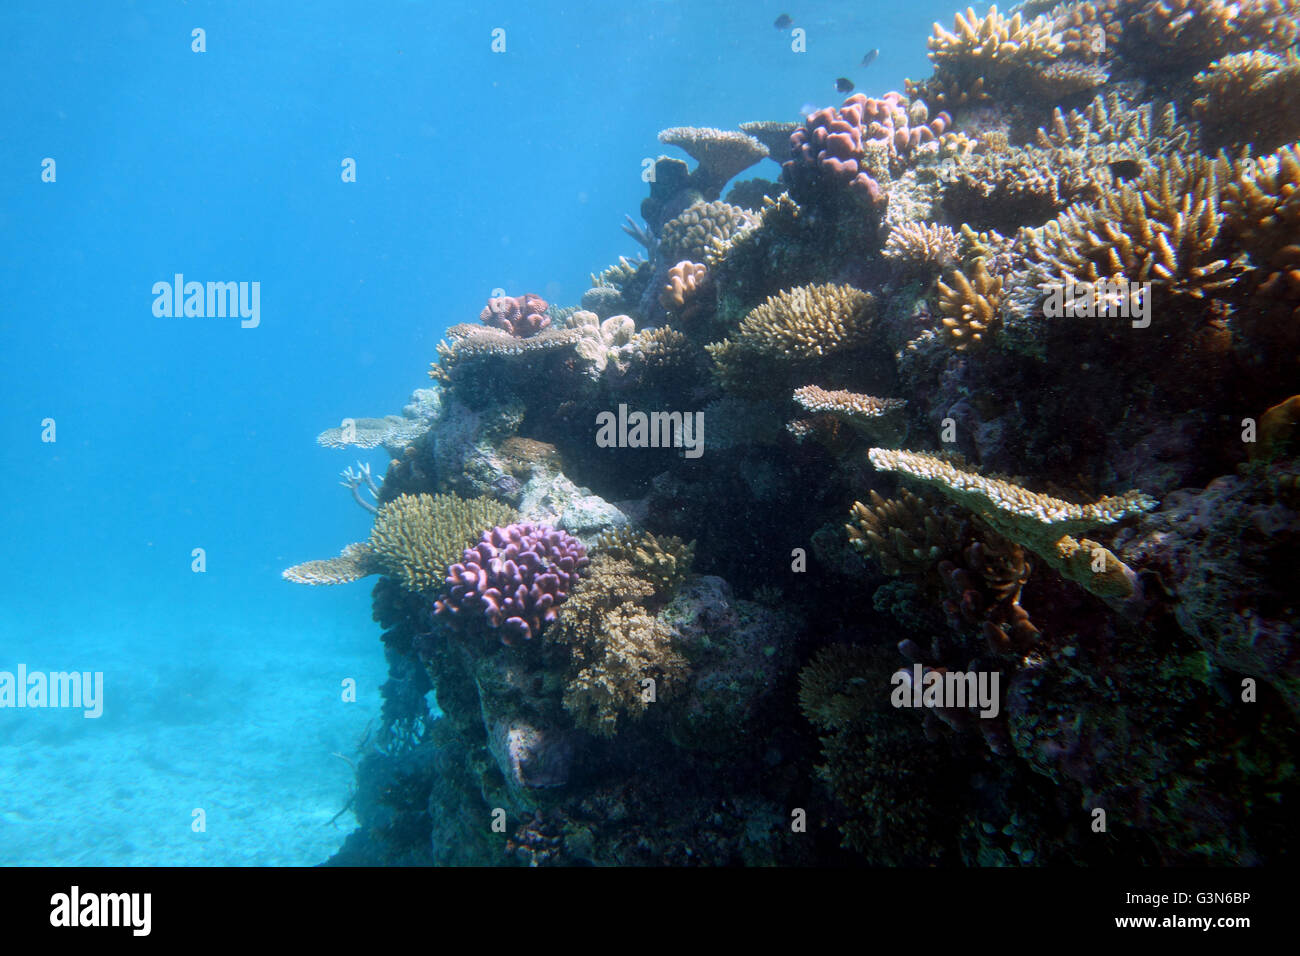 La résilience des récifs de l'espace extra-GBR : sur certains récifs beaucoup de petits coraux sains ont survécu à 2016 cas de blanchiment de la Grande Barrière de Corail Banque D'Images